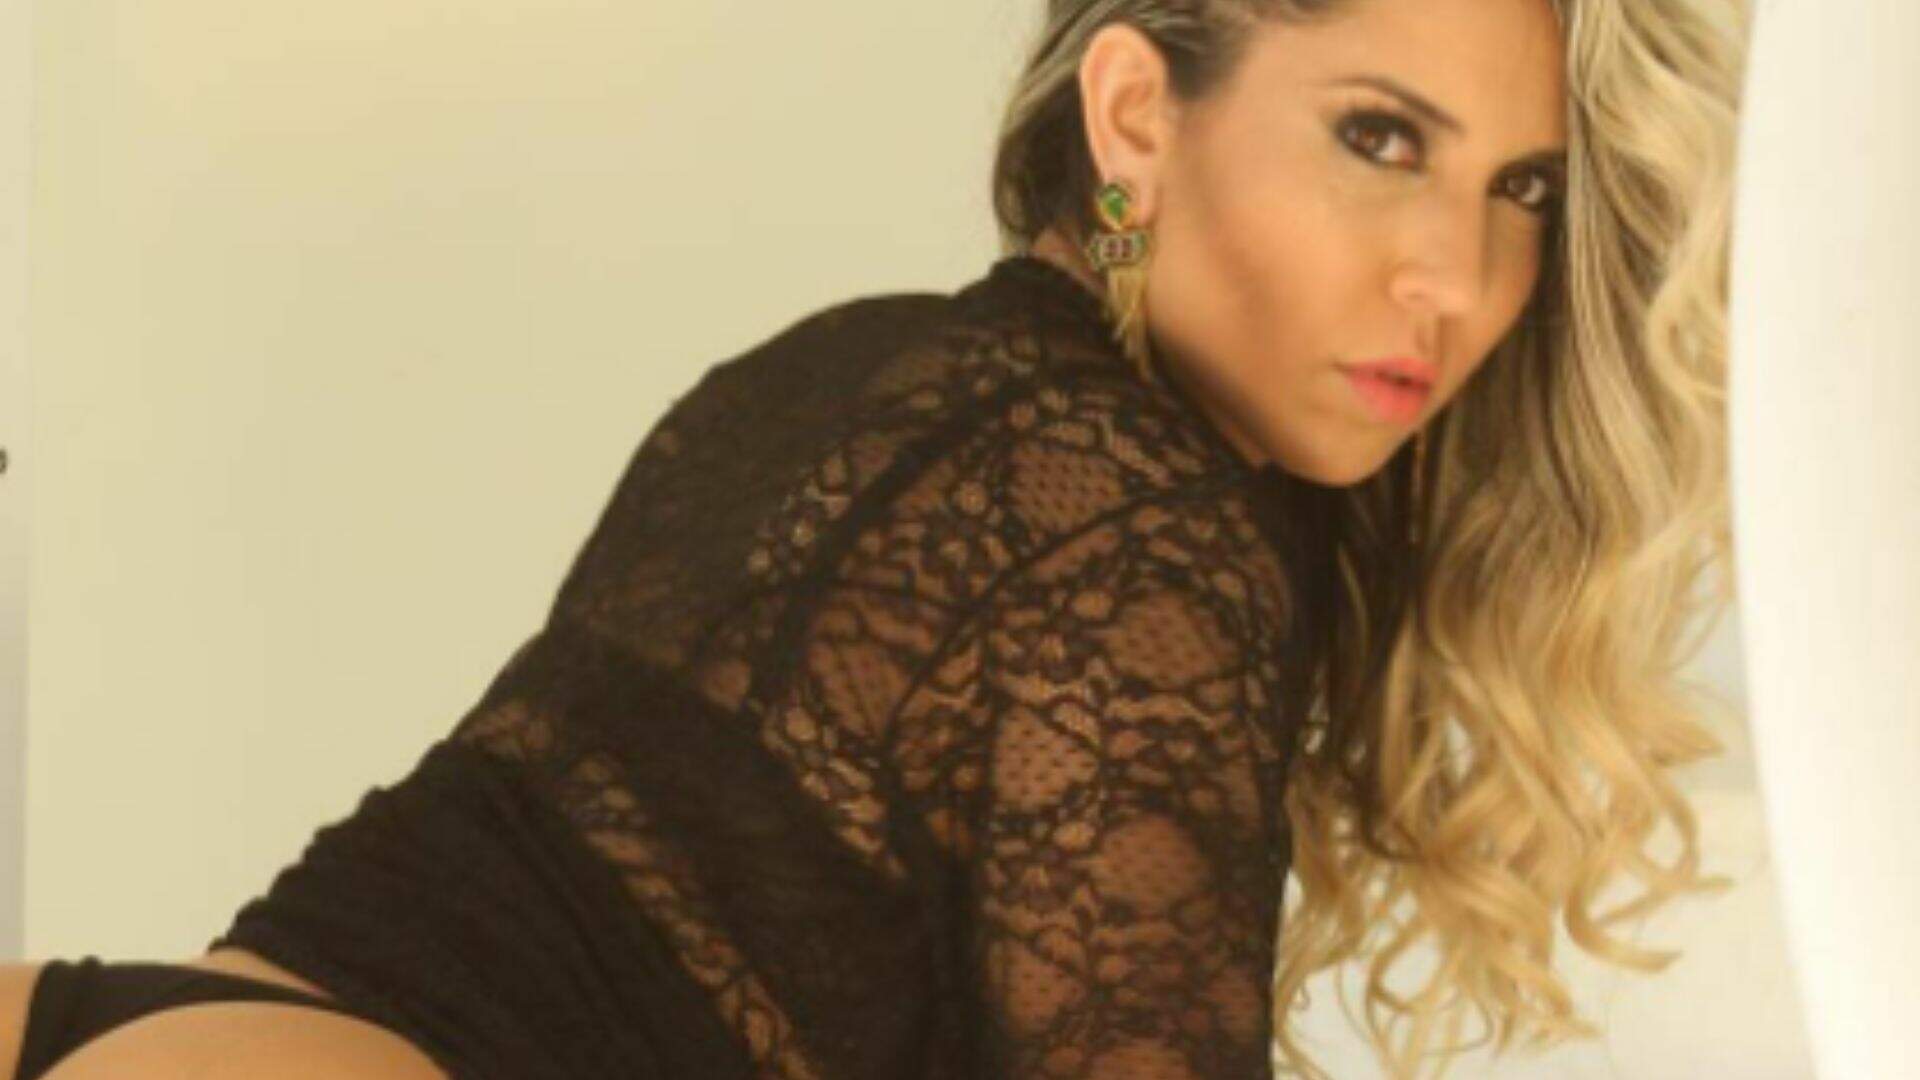 Print vazado? Mulher Melão é clicada no banheiro e foto choca seguidores: “Não acredito” - Metropolitana FM